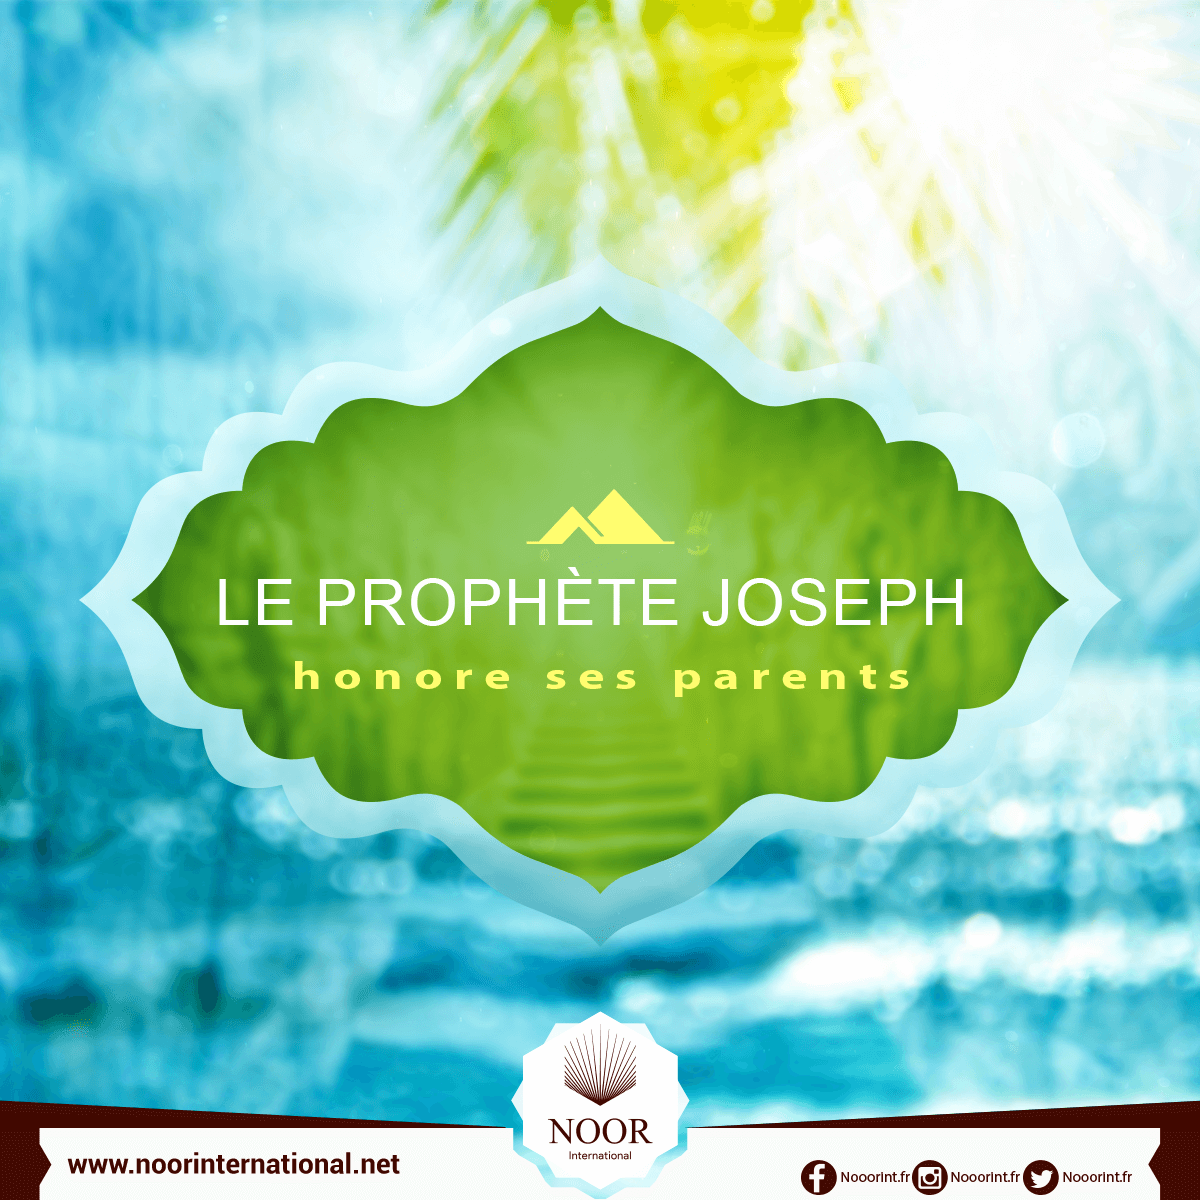 Le prophète Joseph honore ses parents